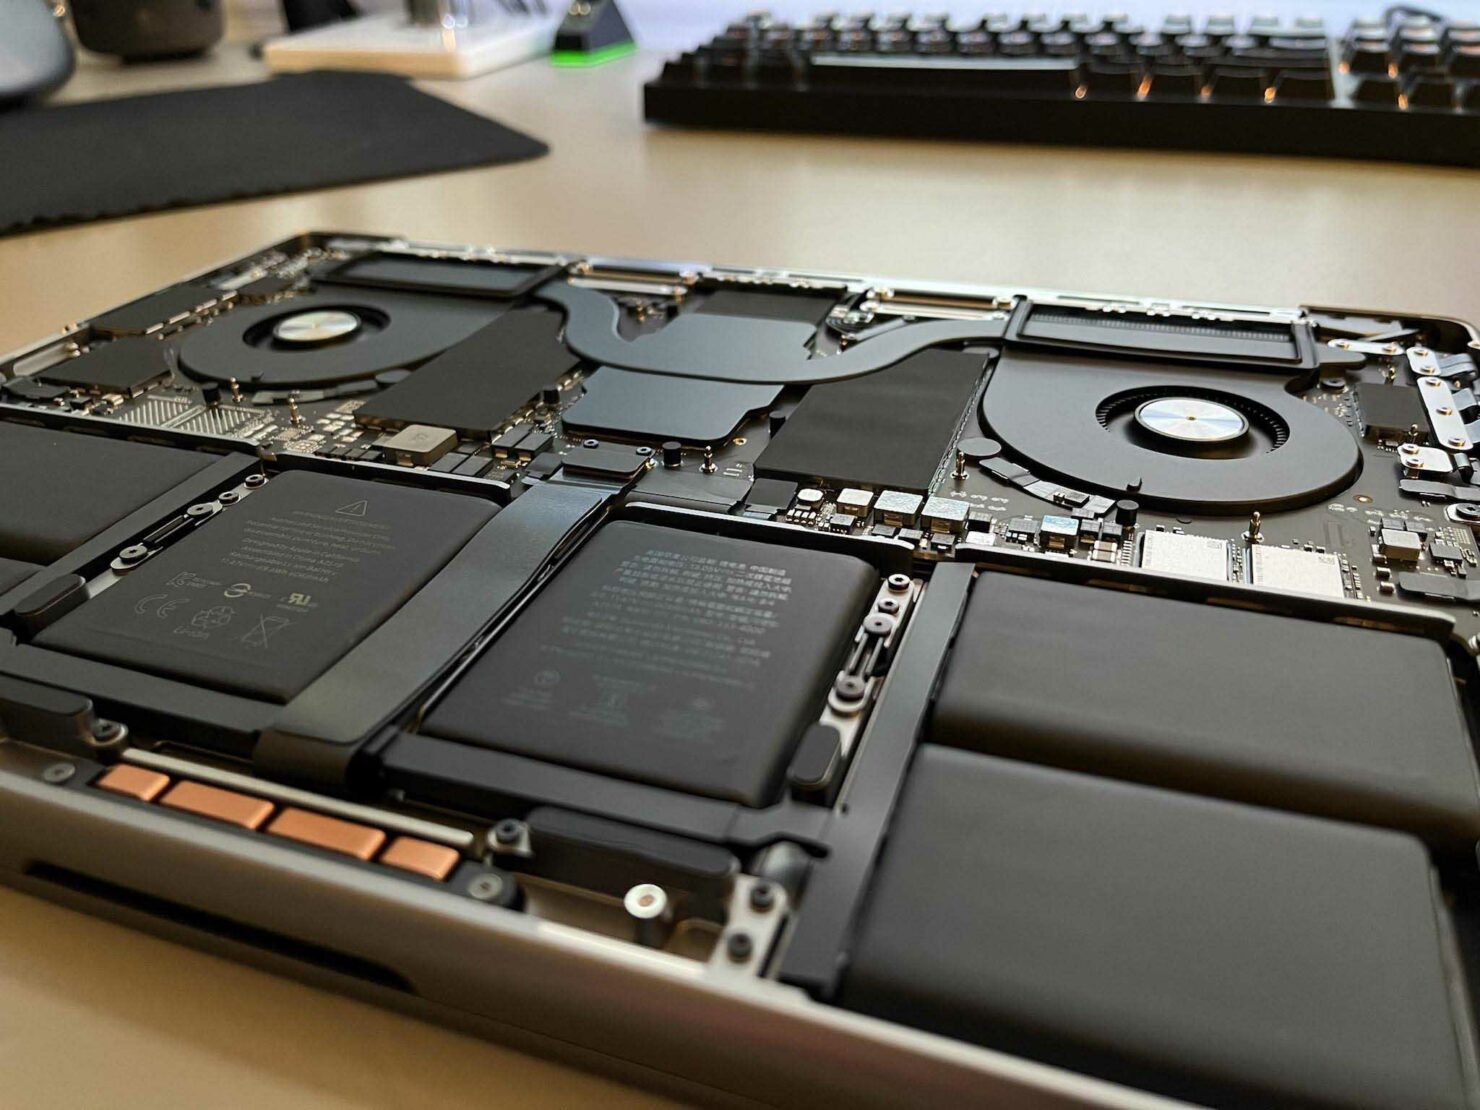 Changer le SSD et la RAM d'un Mac M1, c'est possible… mais très compliqué